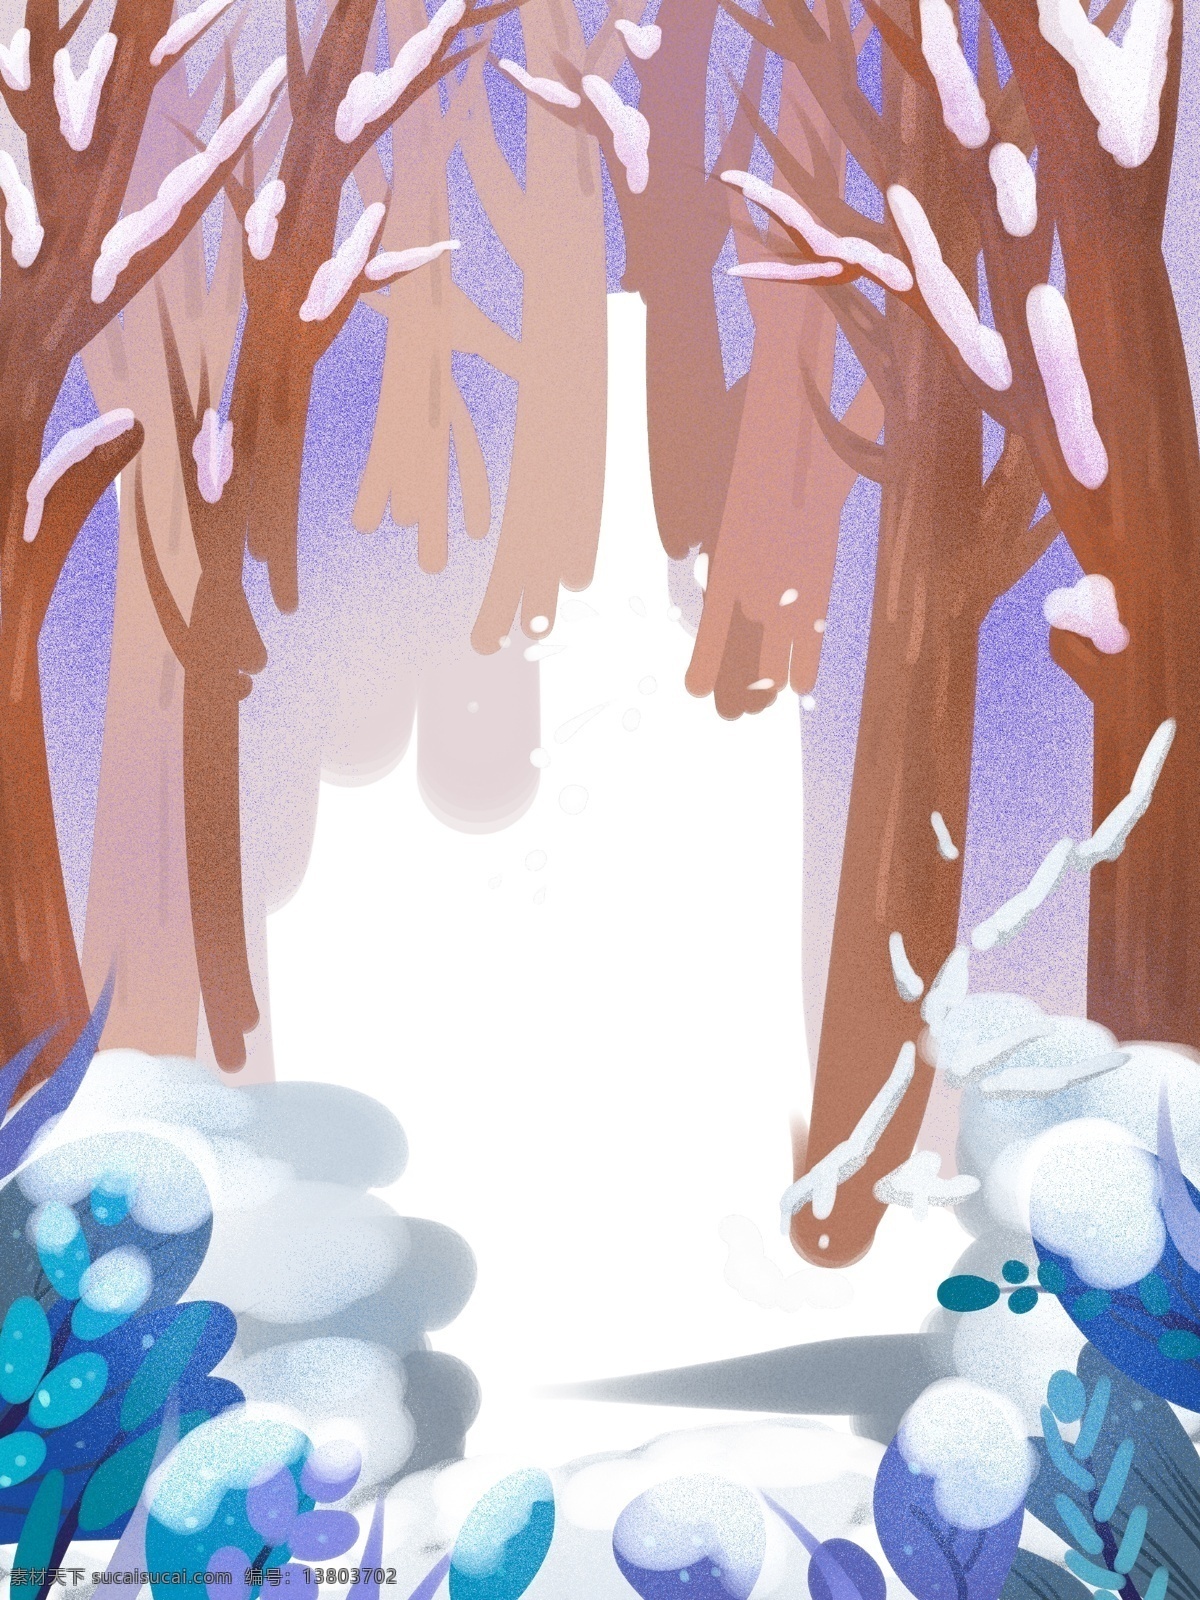 彩绘 冬季 雪地 树林 背景 背景图 创意 下雪 广告背景 背景设计 特邀背景 促销背景 背景展板图